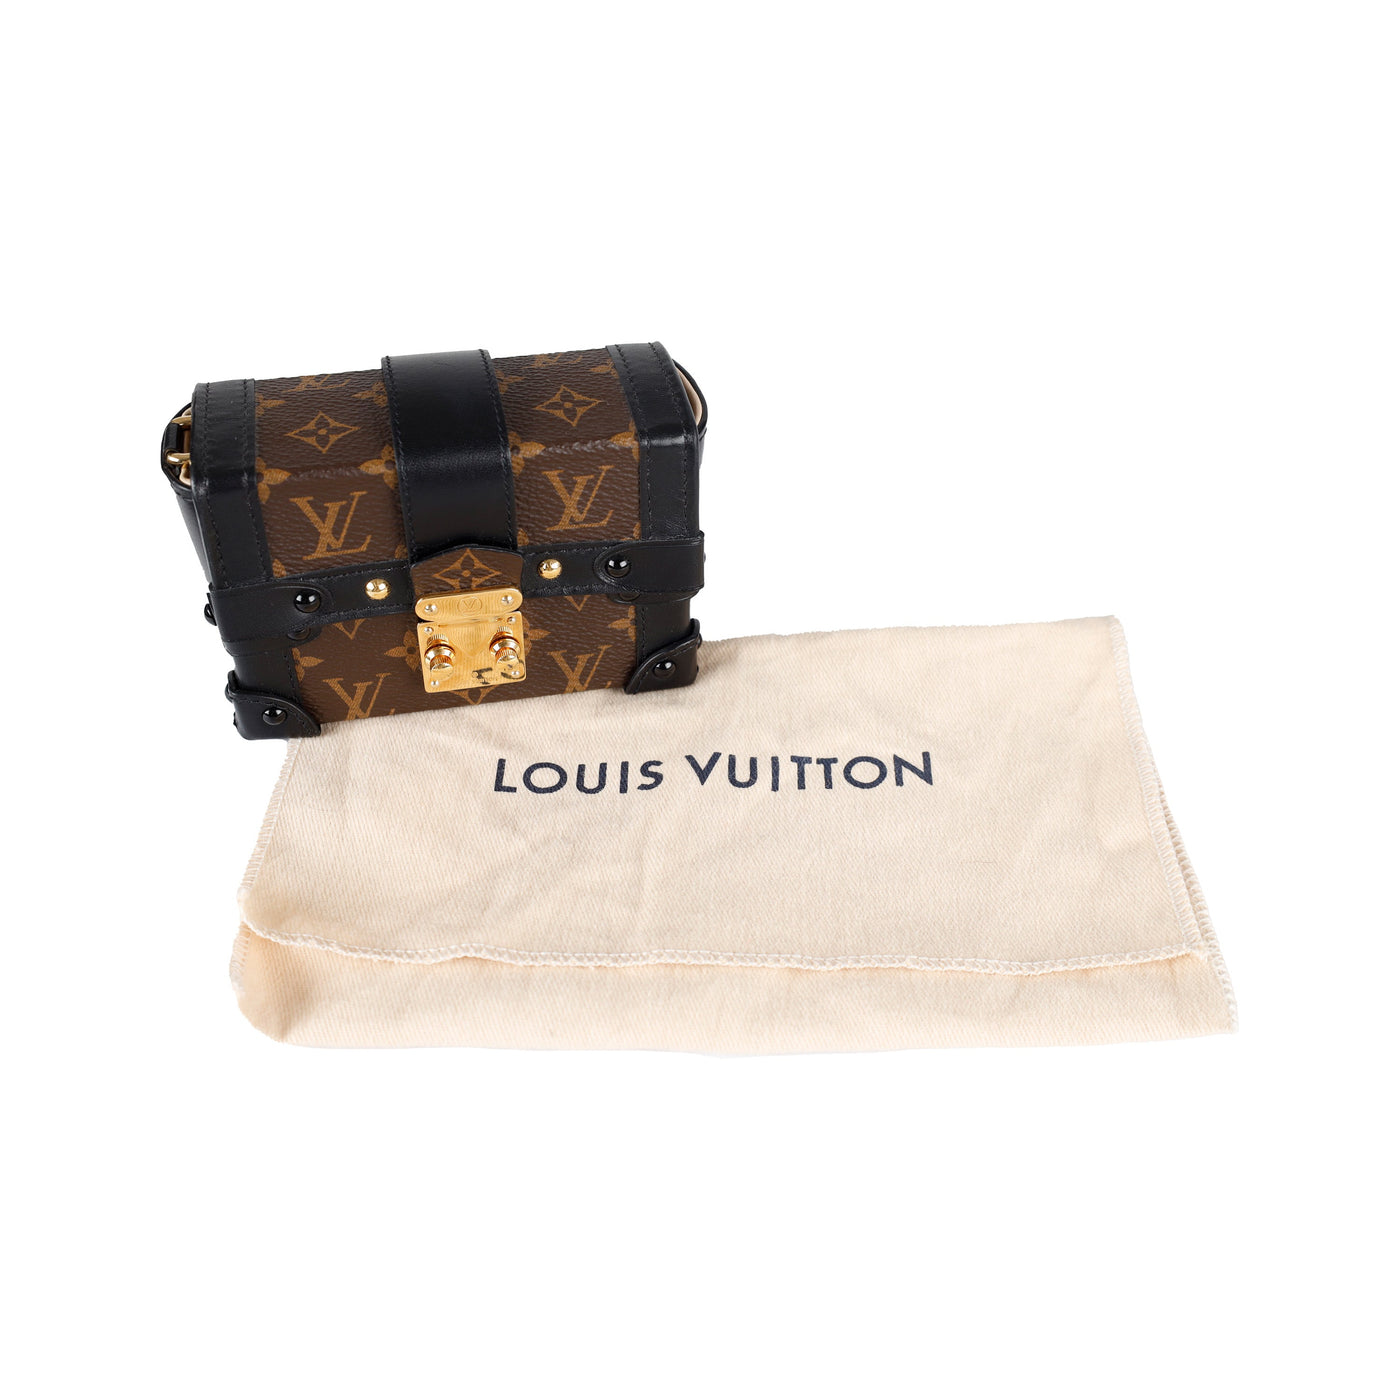 LOUIS VUITTON Donna Borse & pochette stile vintage